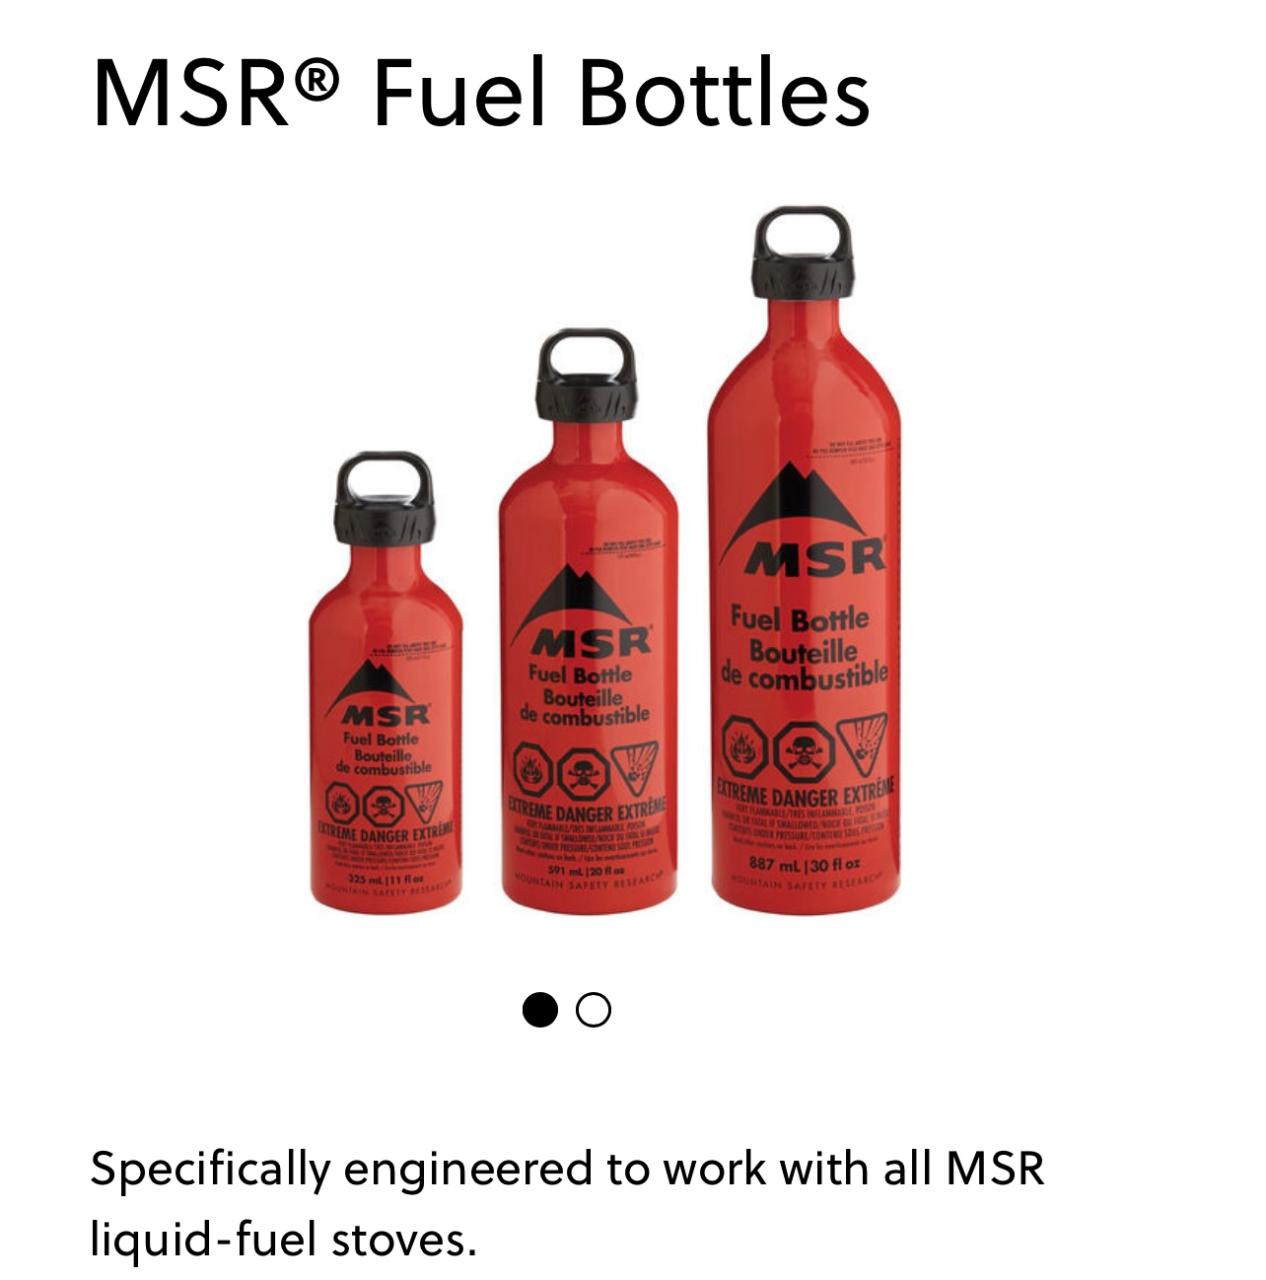 MSR Fuel Bottle - only